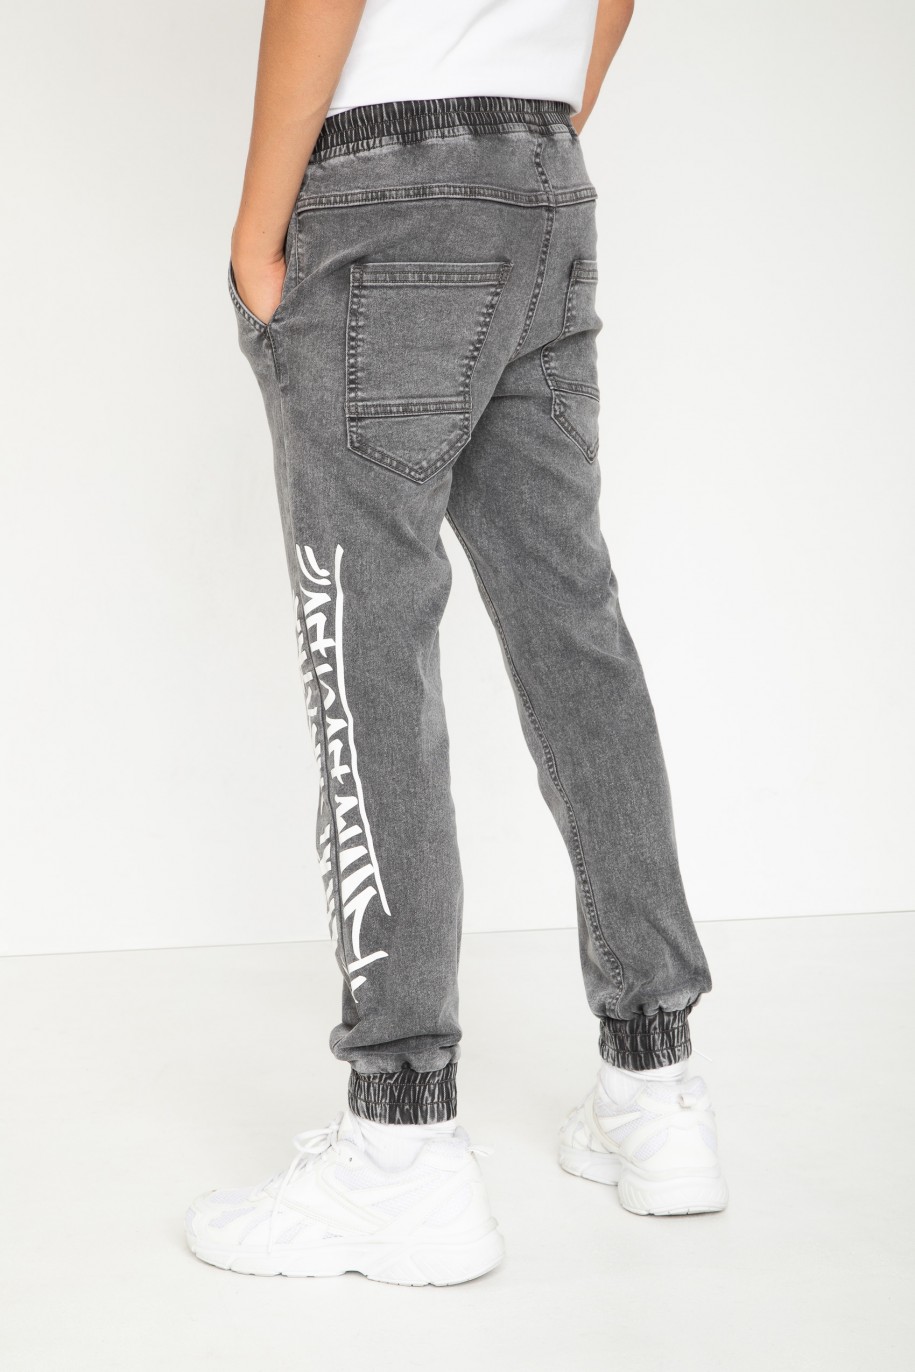 Szare jeansowe spodnie typu JOGGER - 43780